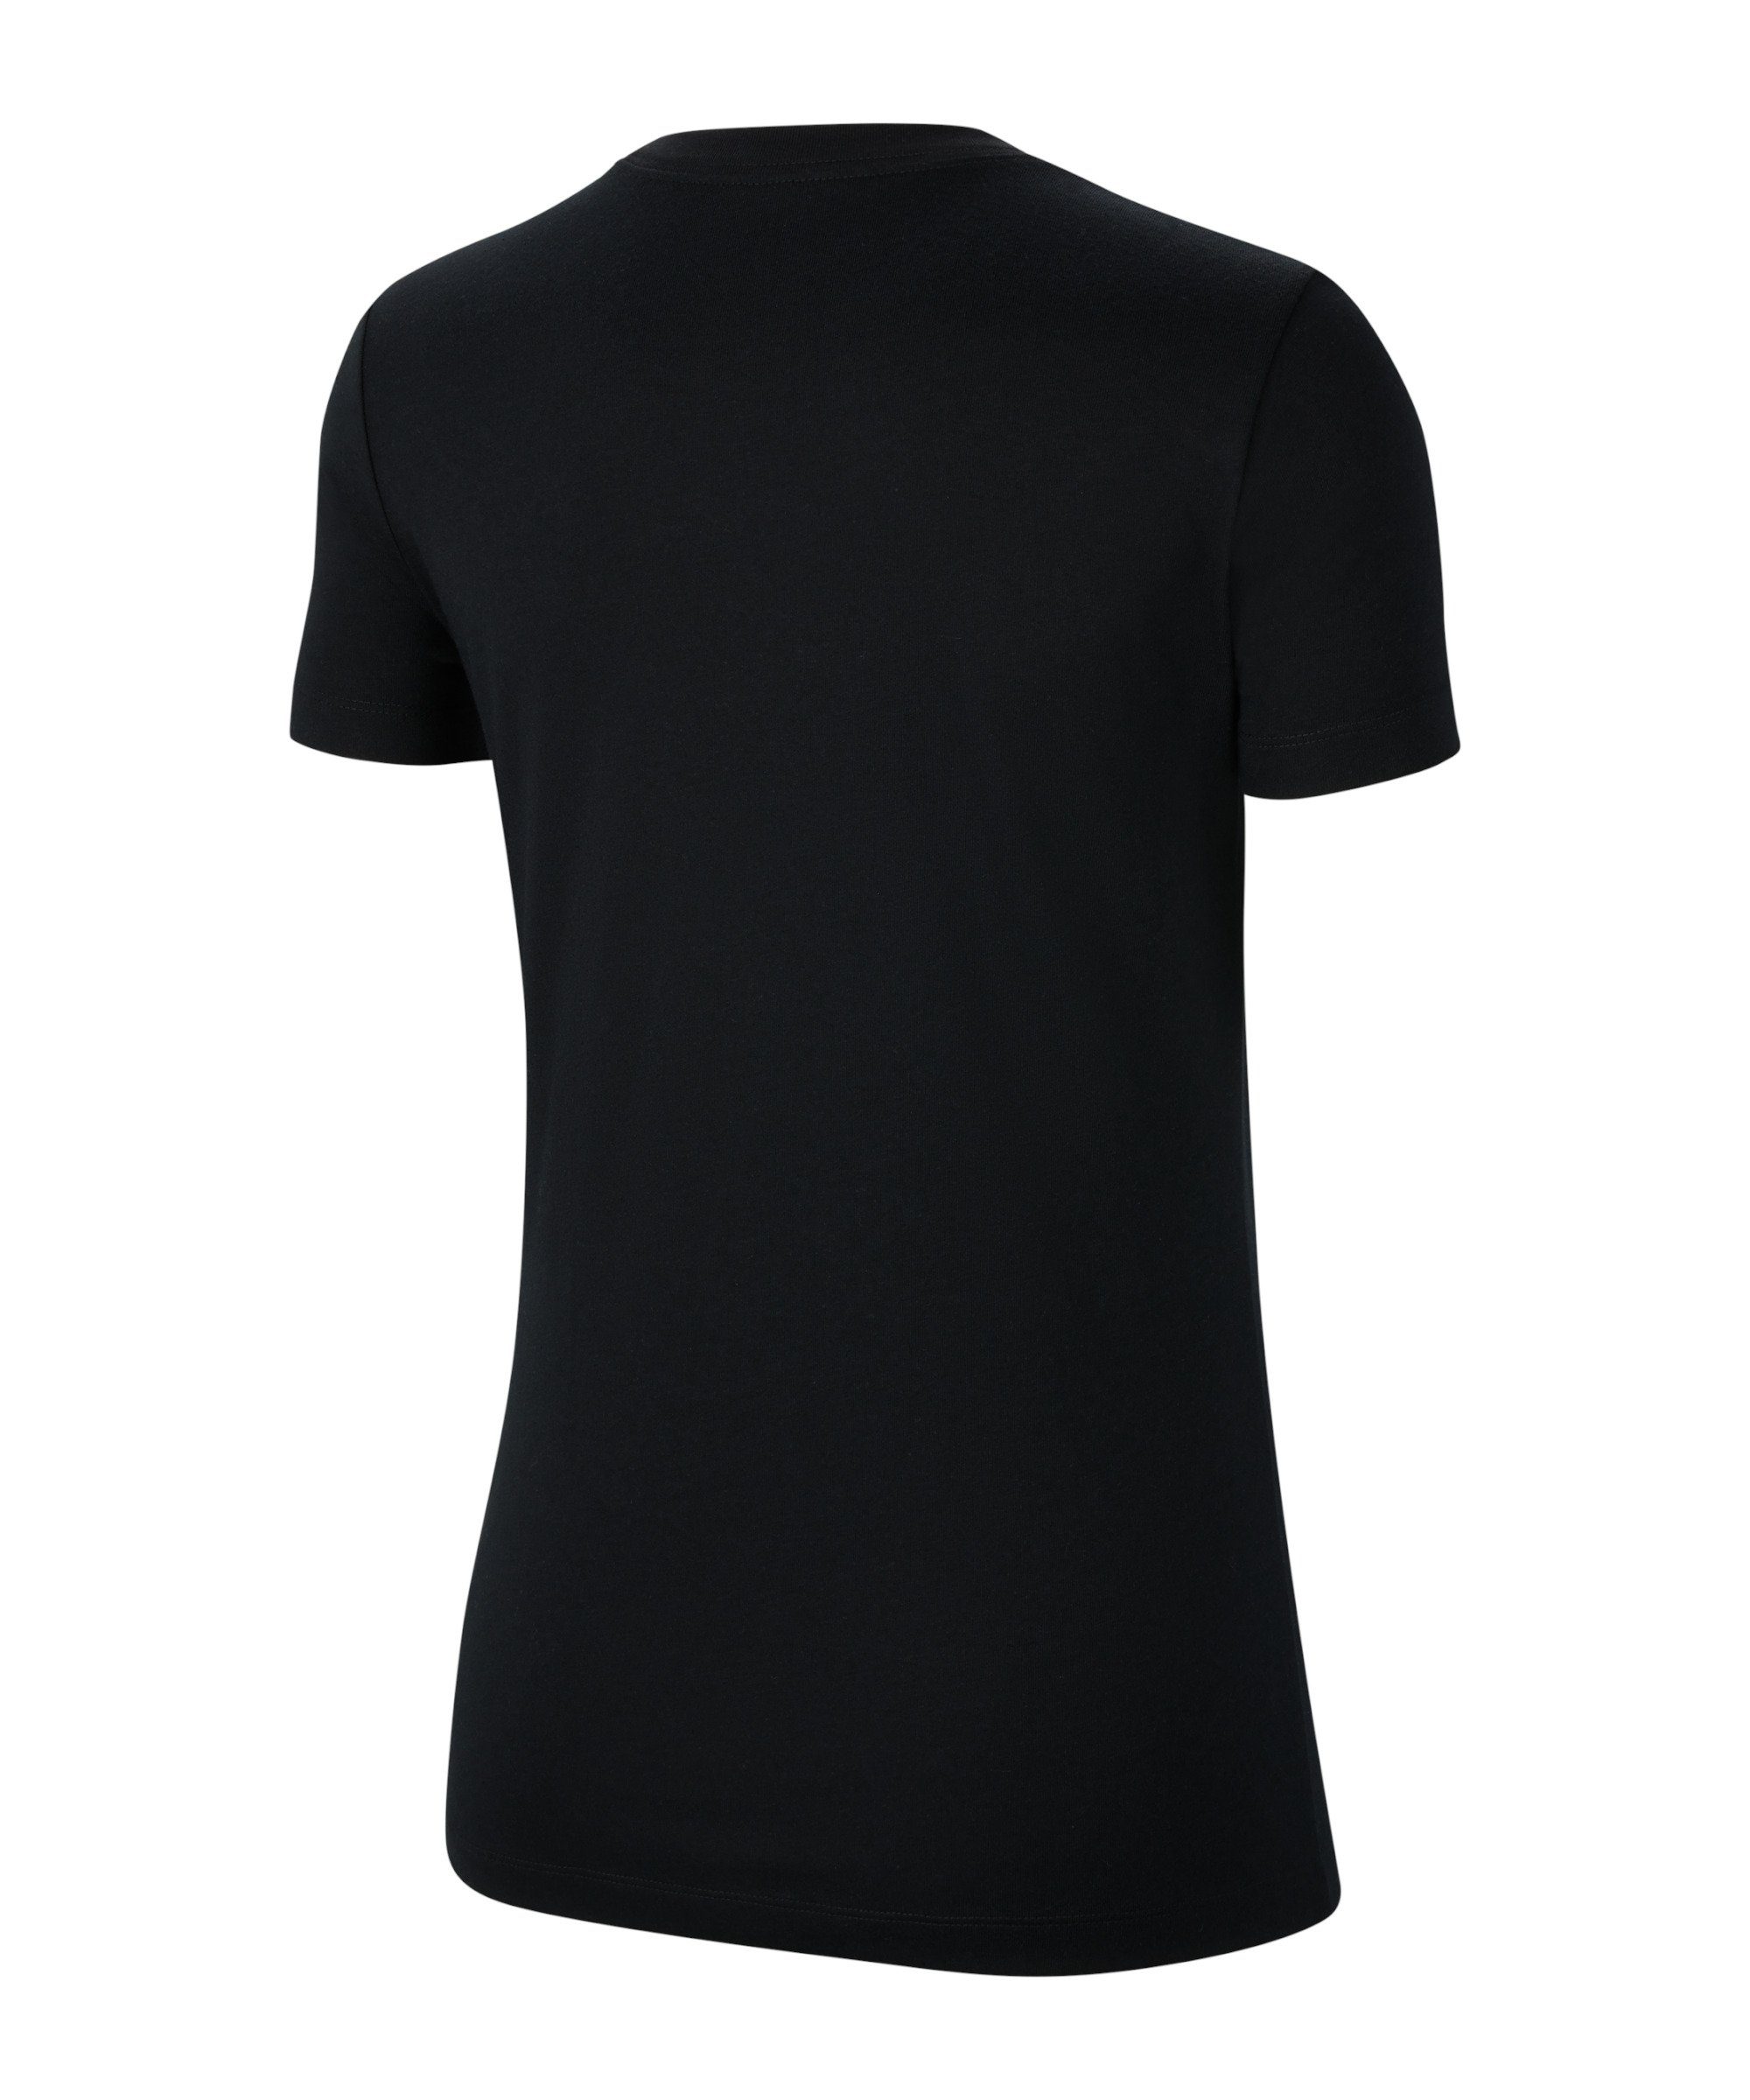 T-Shirt 20 Park default T-Shirt Nike Swoosh Damen schwarzweiss